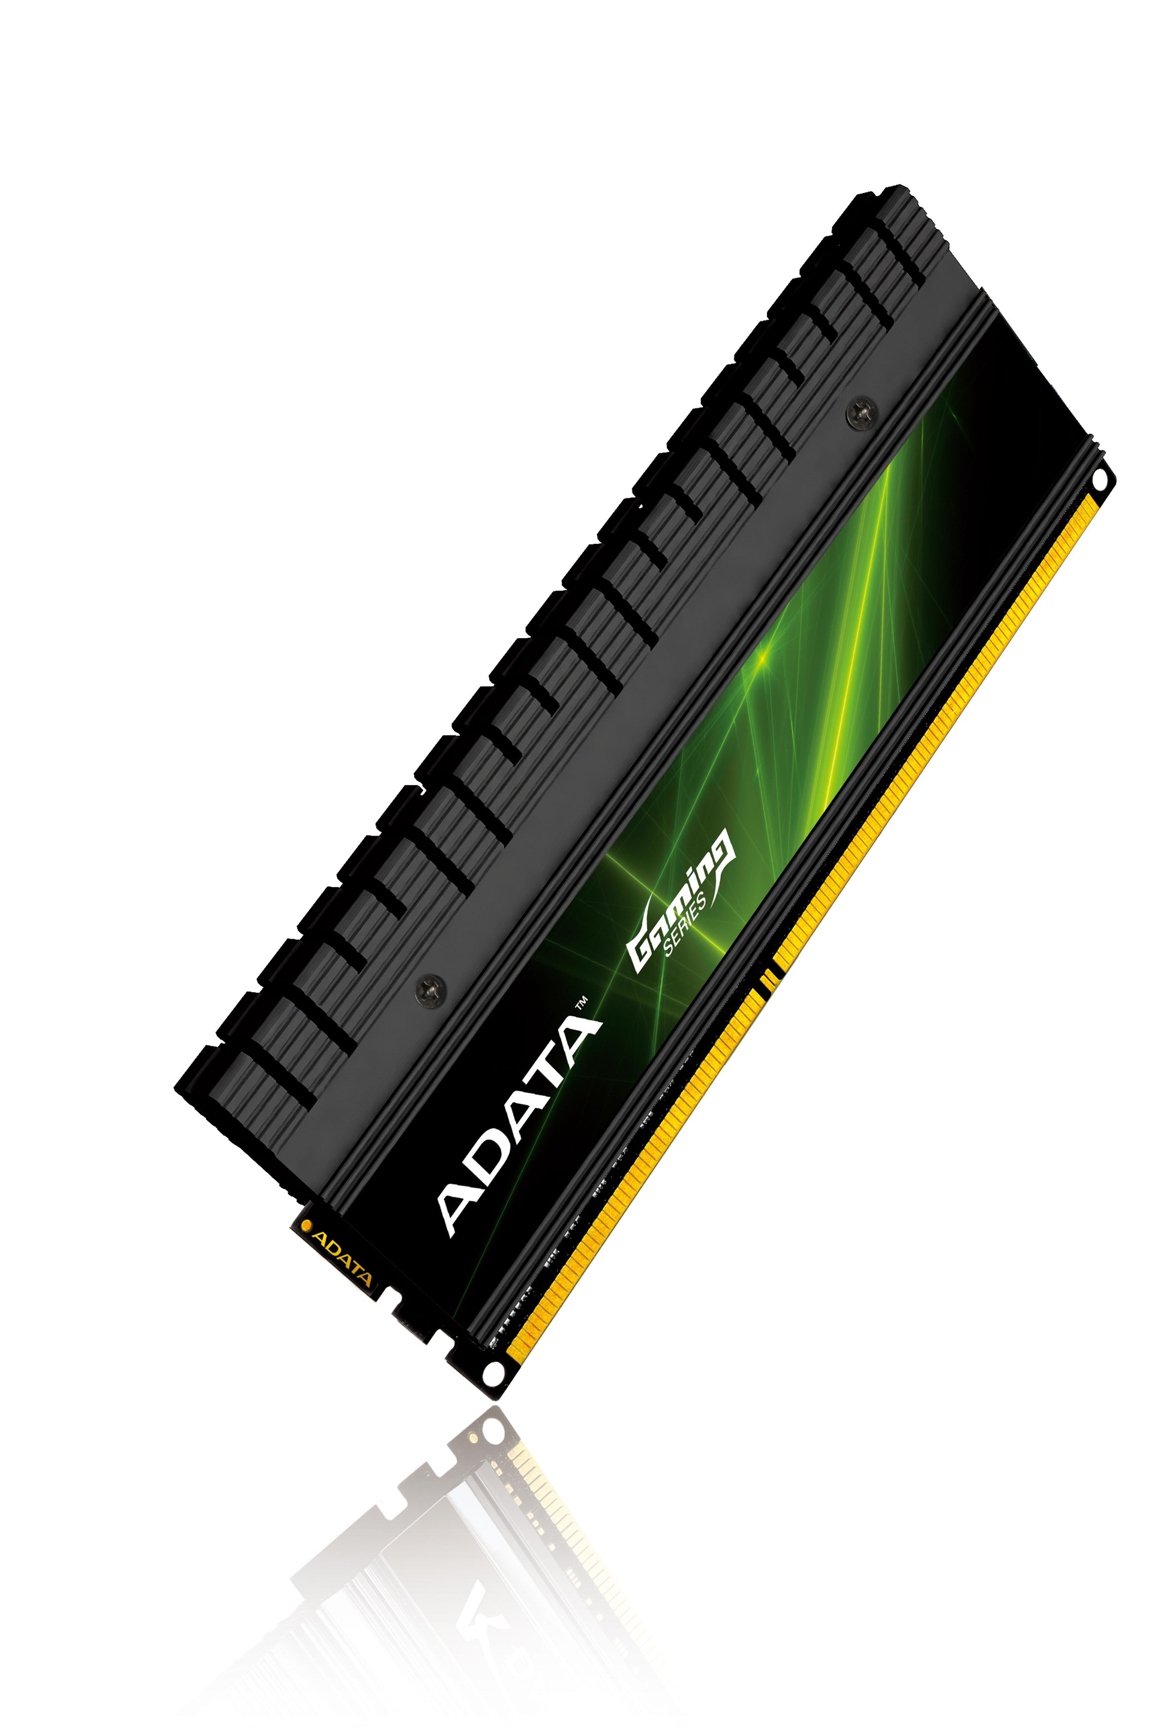 Immagine pubblicata in relazione al seguente contenuto: ADATA lancia il kit di RAM DDR3 XPG Gaming 2.0 per Ivy Bridge | Nome immagine: news19382_ADATA-DDR3-XPG Gaming-v2.0-Series_1.jpg